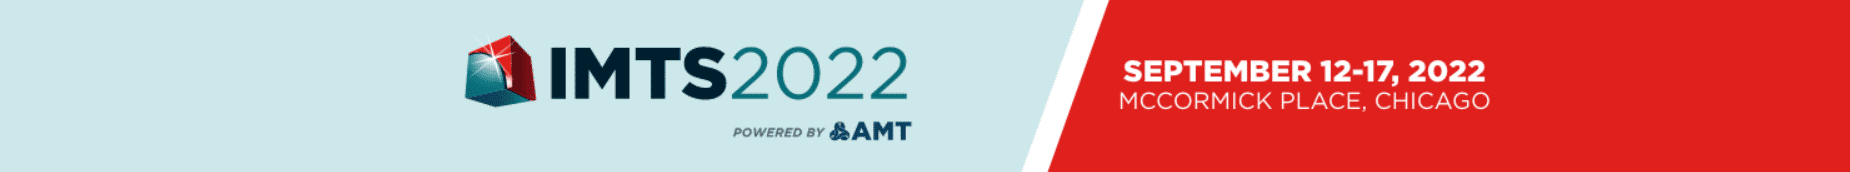 IMTS 2022 Banner Technomark